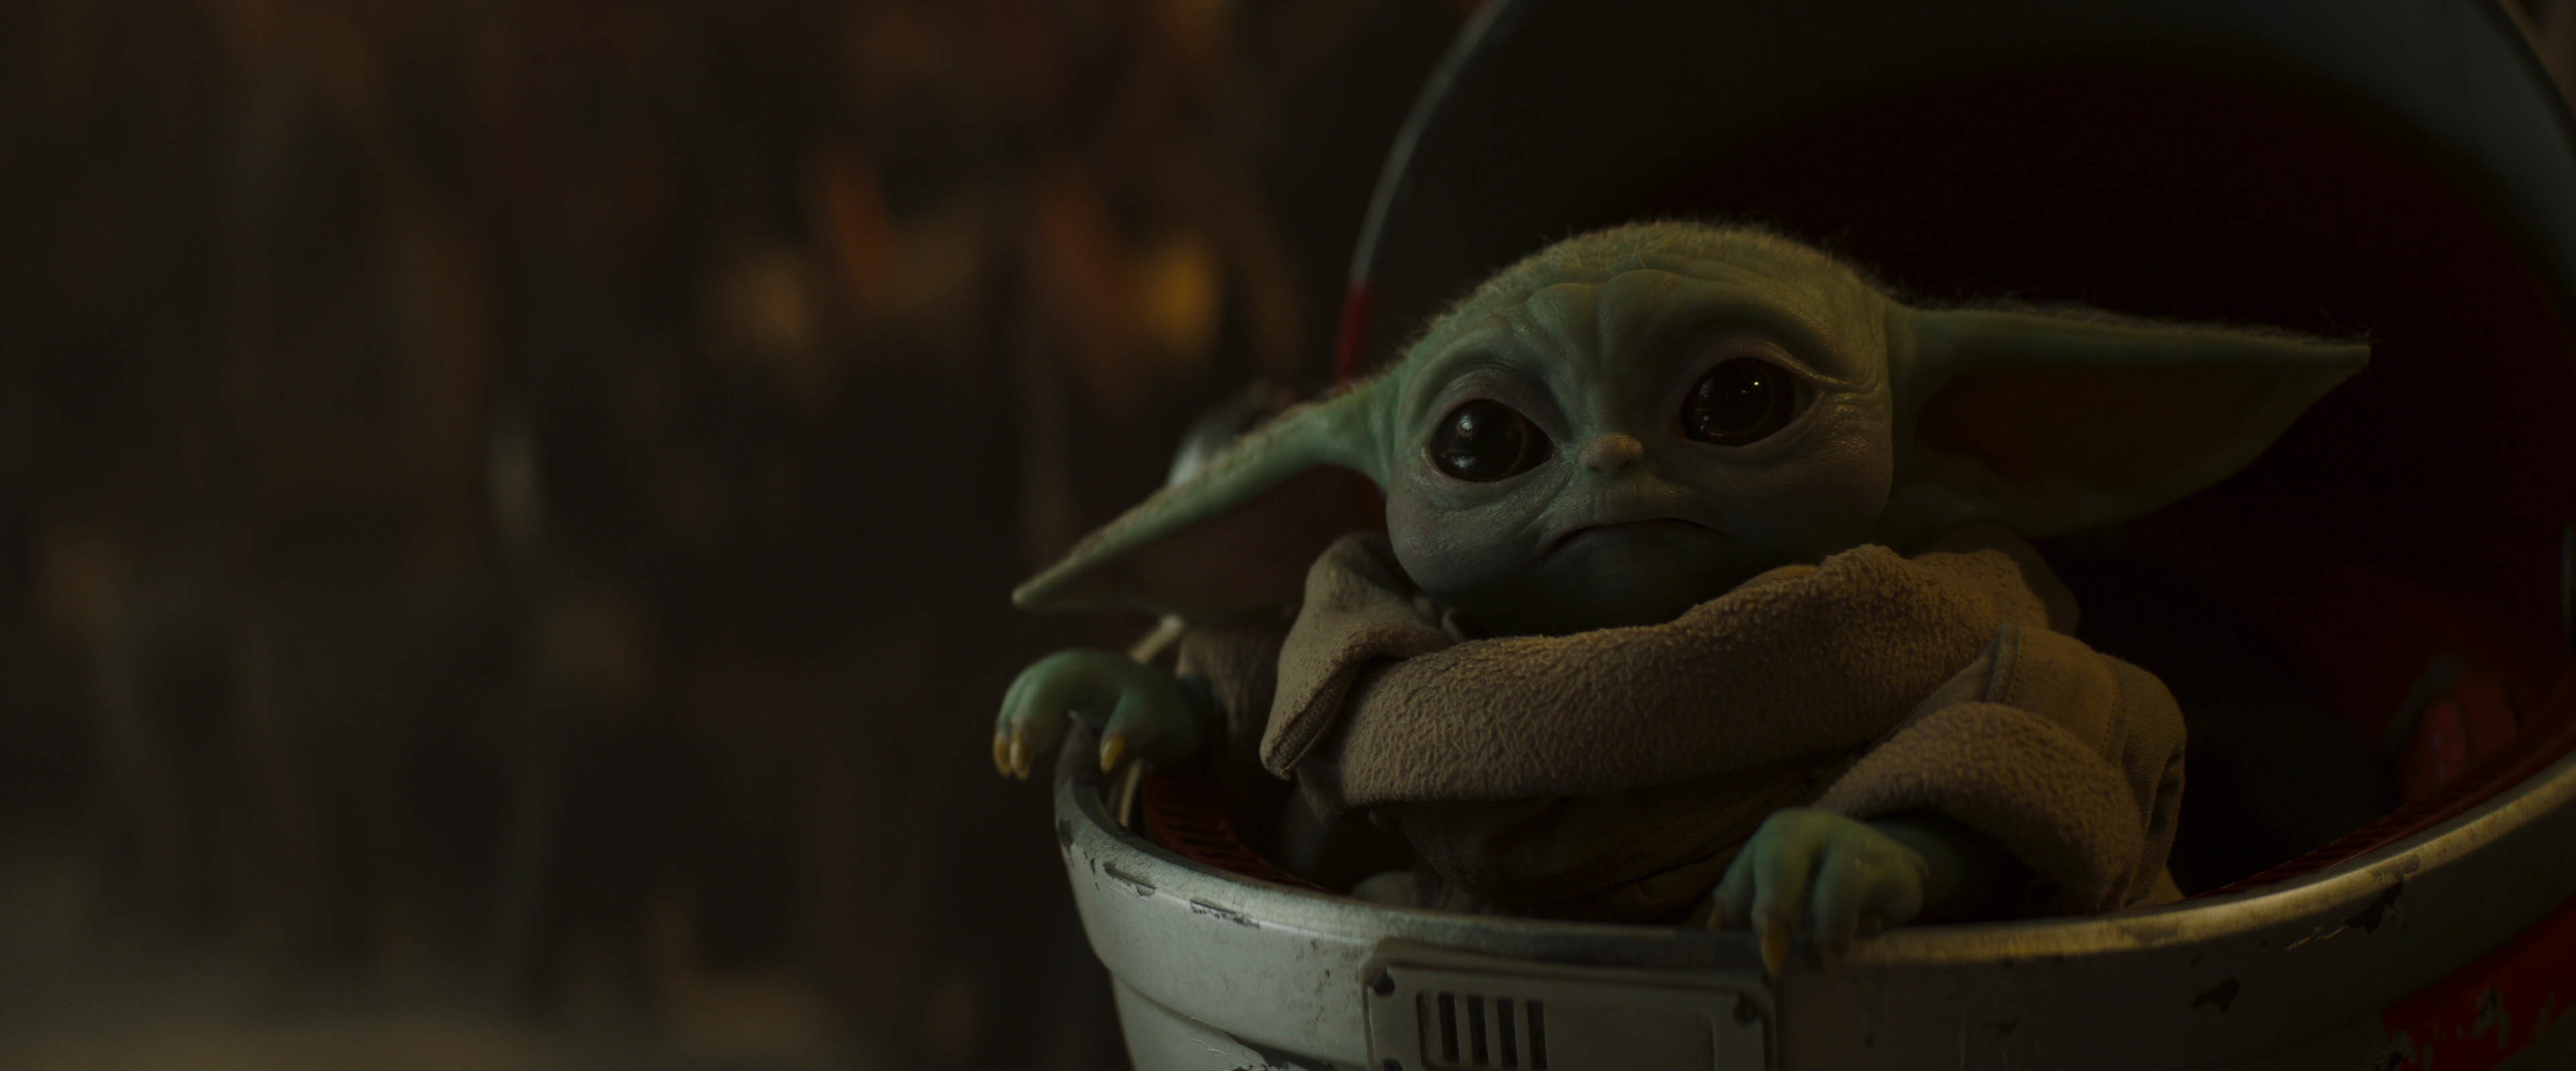 Το Baby Yoda θα εμφανιστεί στο βιβλίο του Boba Fett;